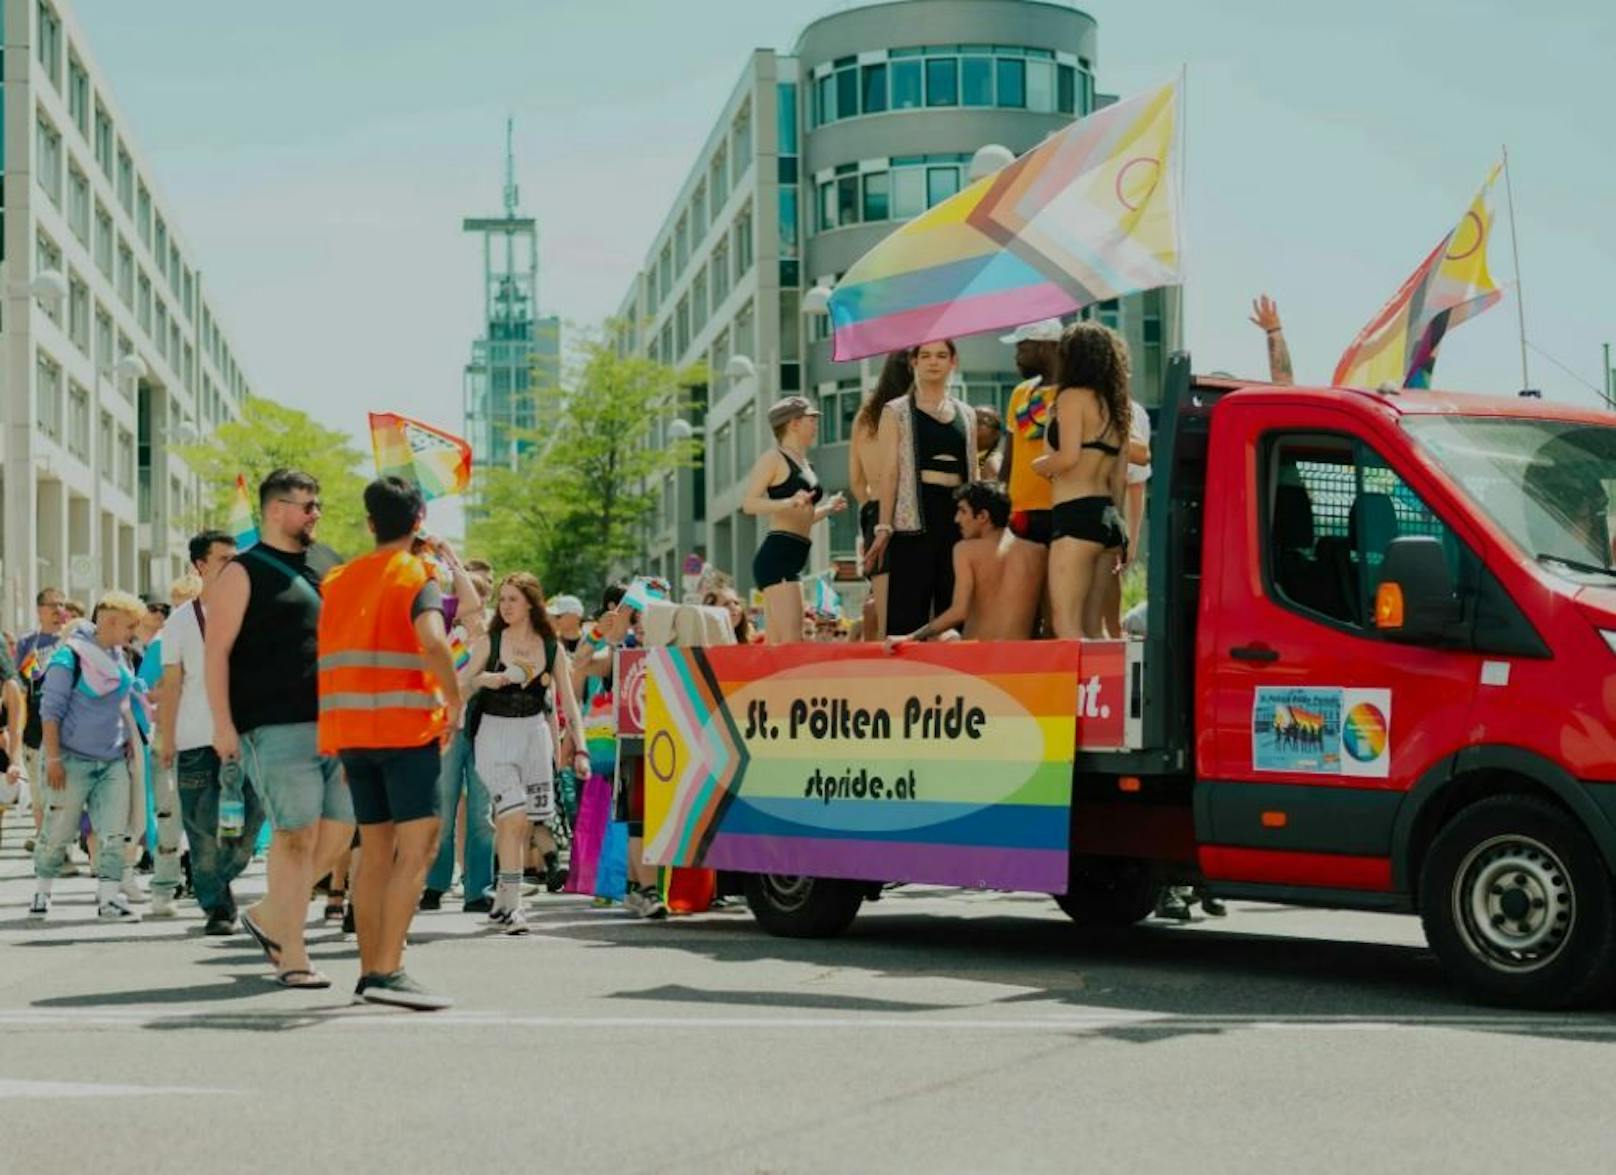 Regenbogenfarben! Zweite Pride Parade in St. Pölten